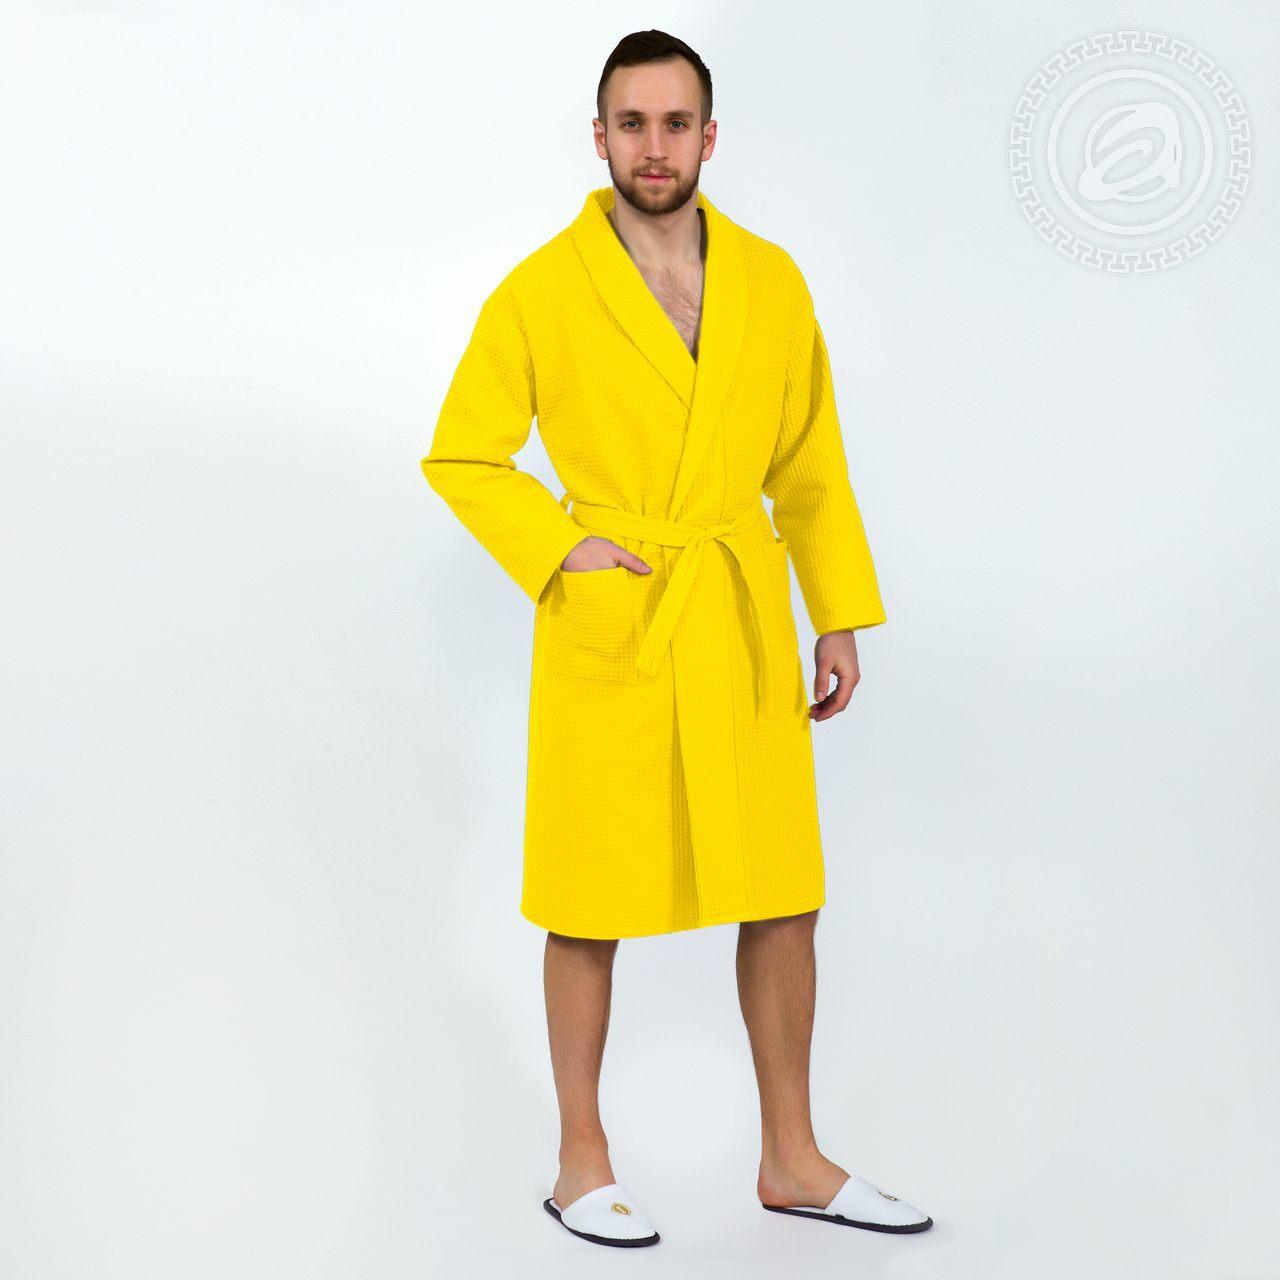 DOMTEKC Халат банный мужской с капюшоном, желтый, размер 5XL